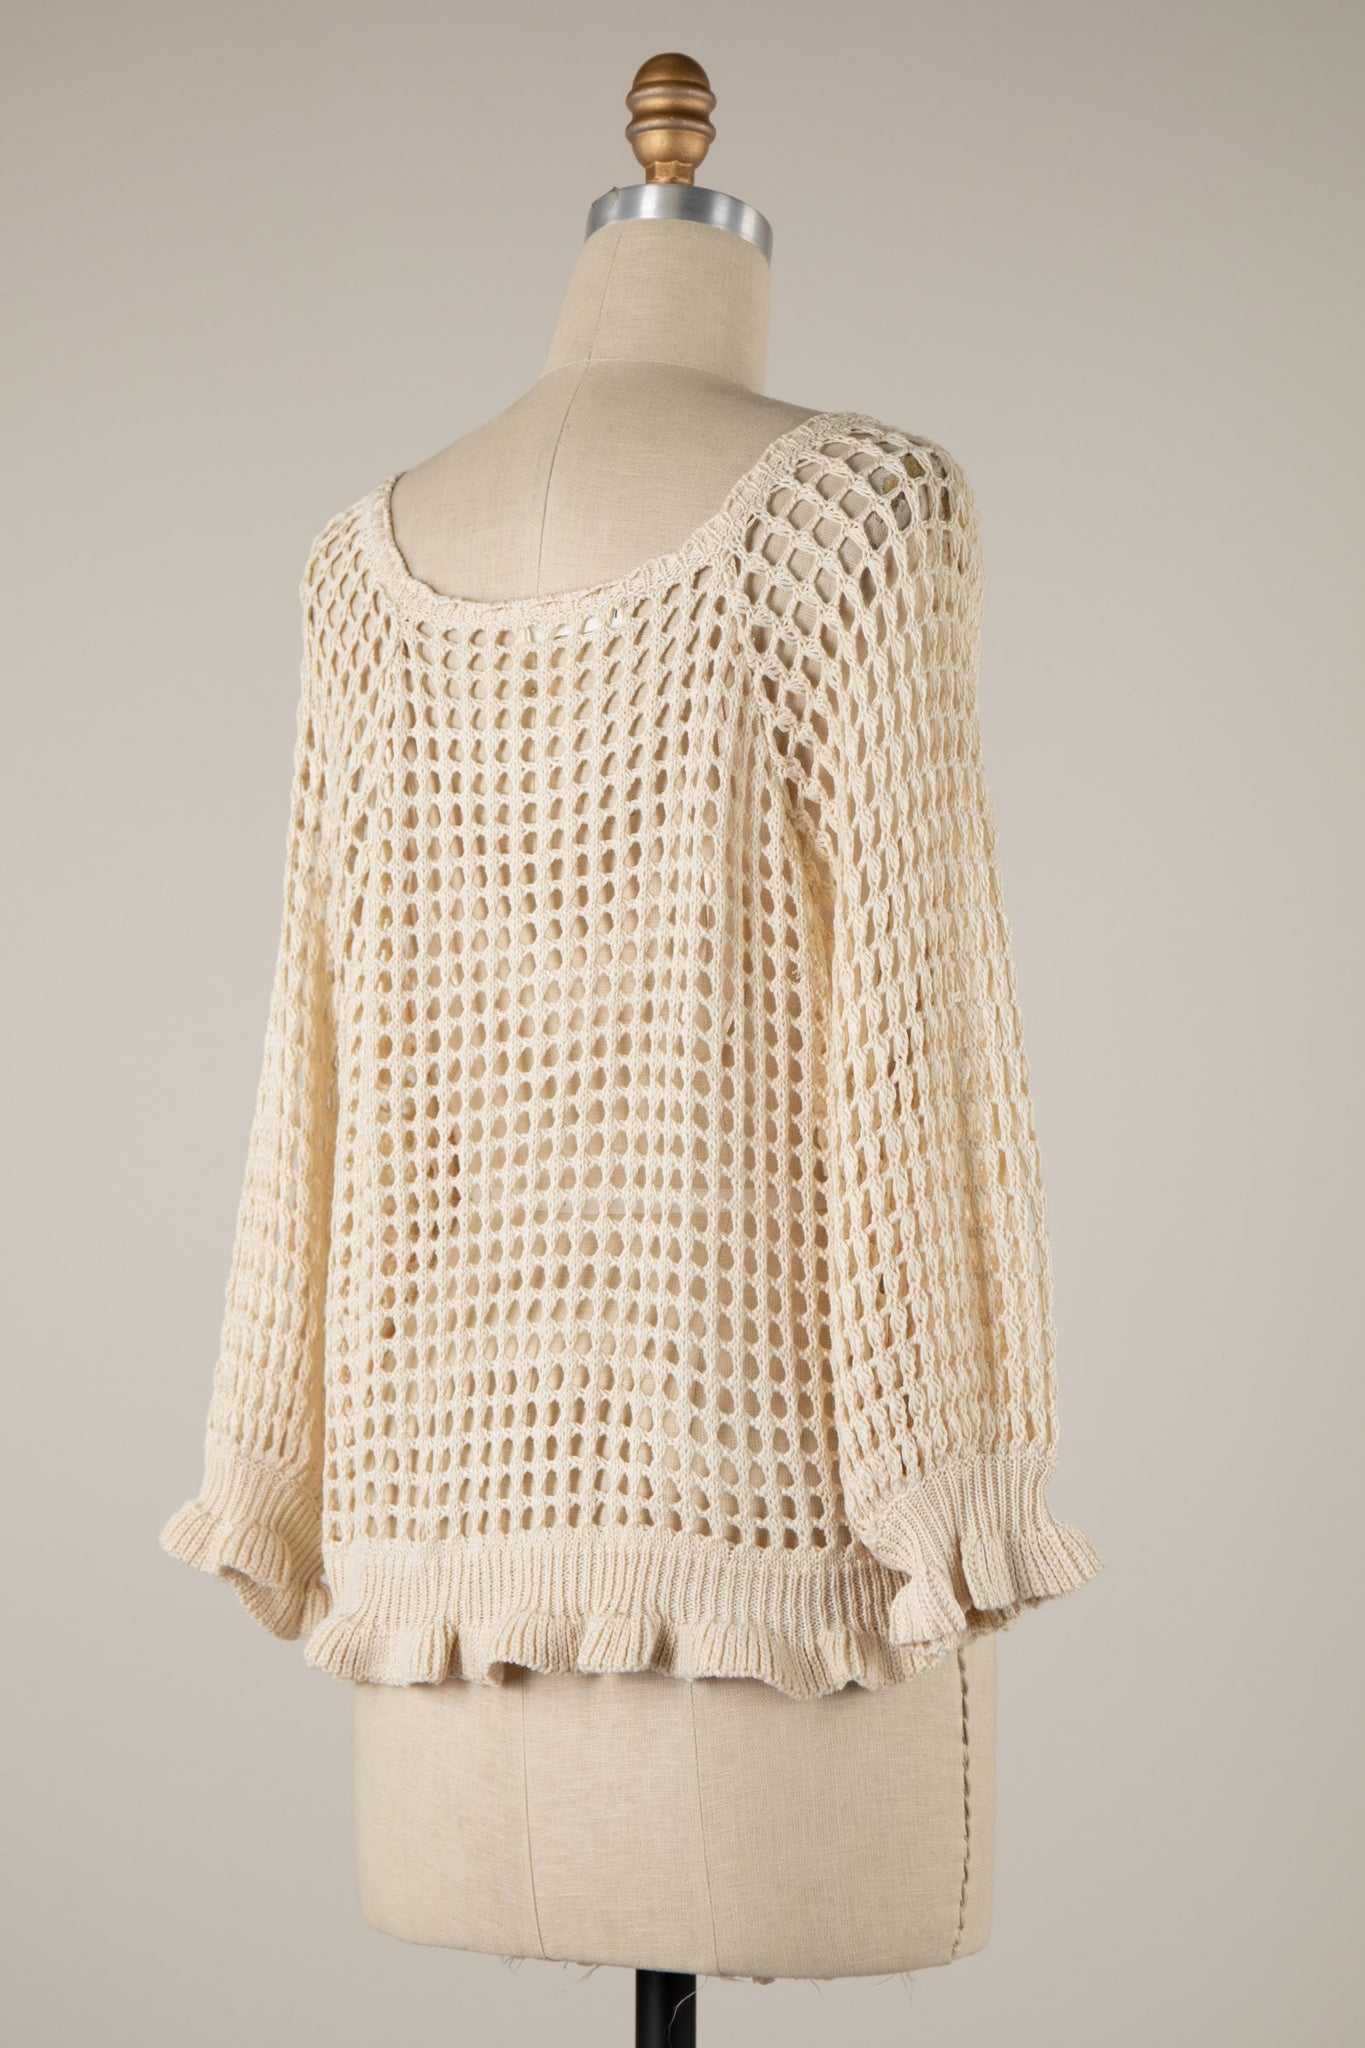 Cream Crochet Long Sleeve Top, Knitwear